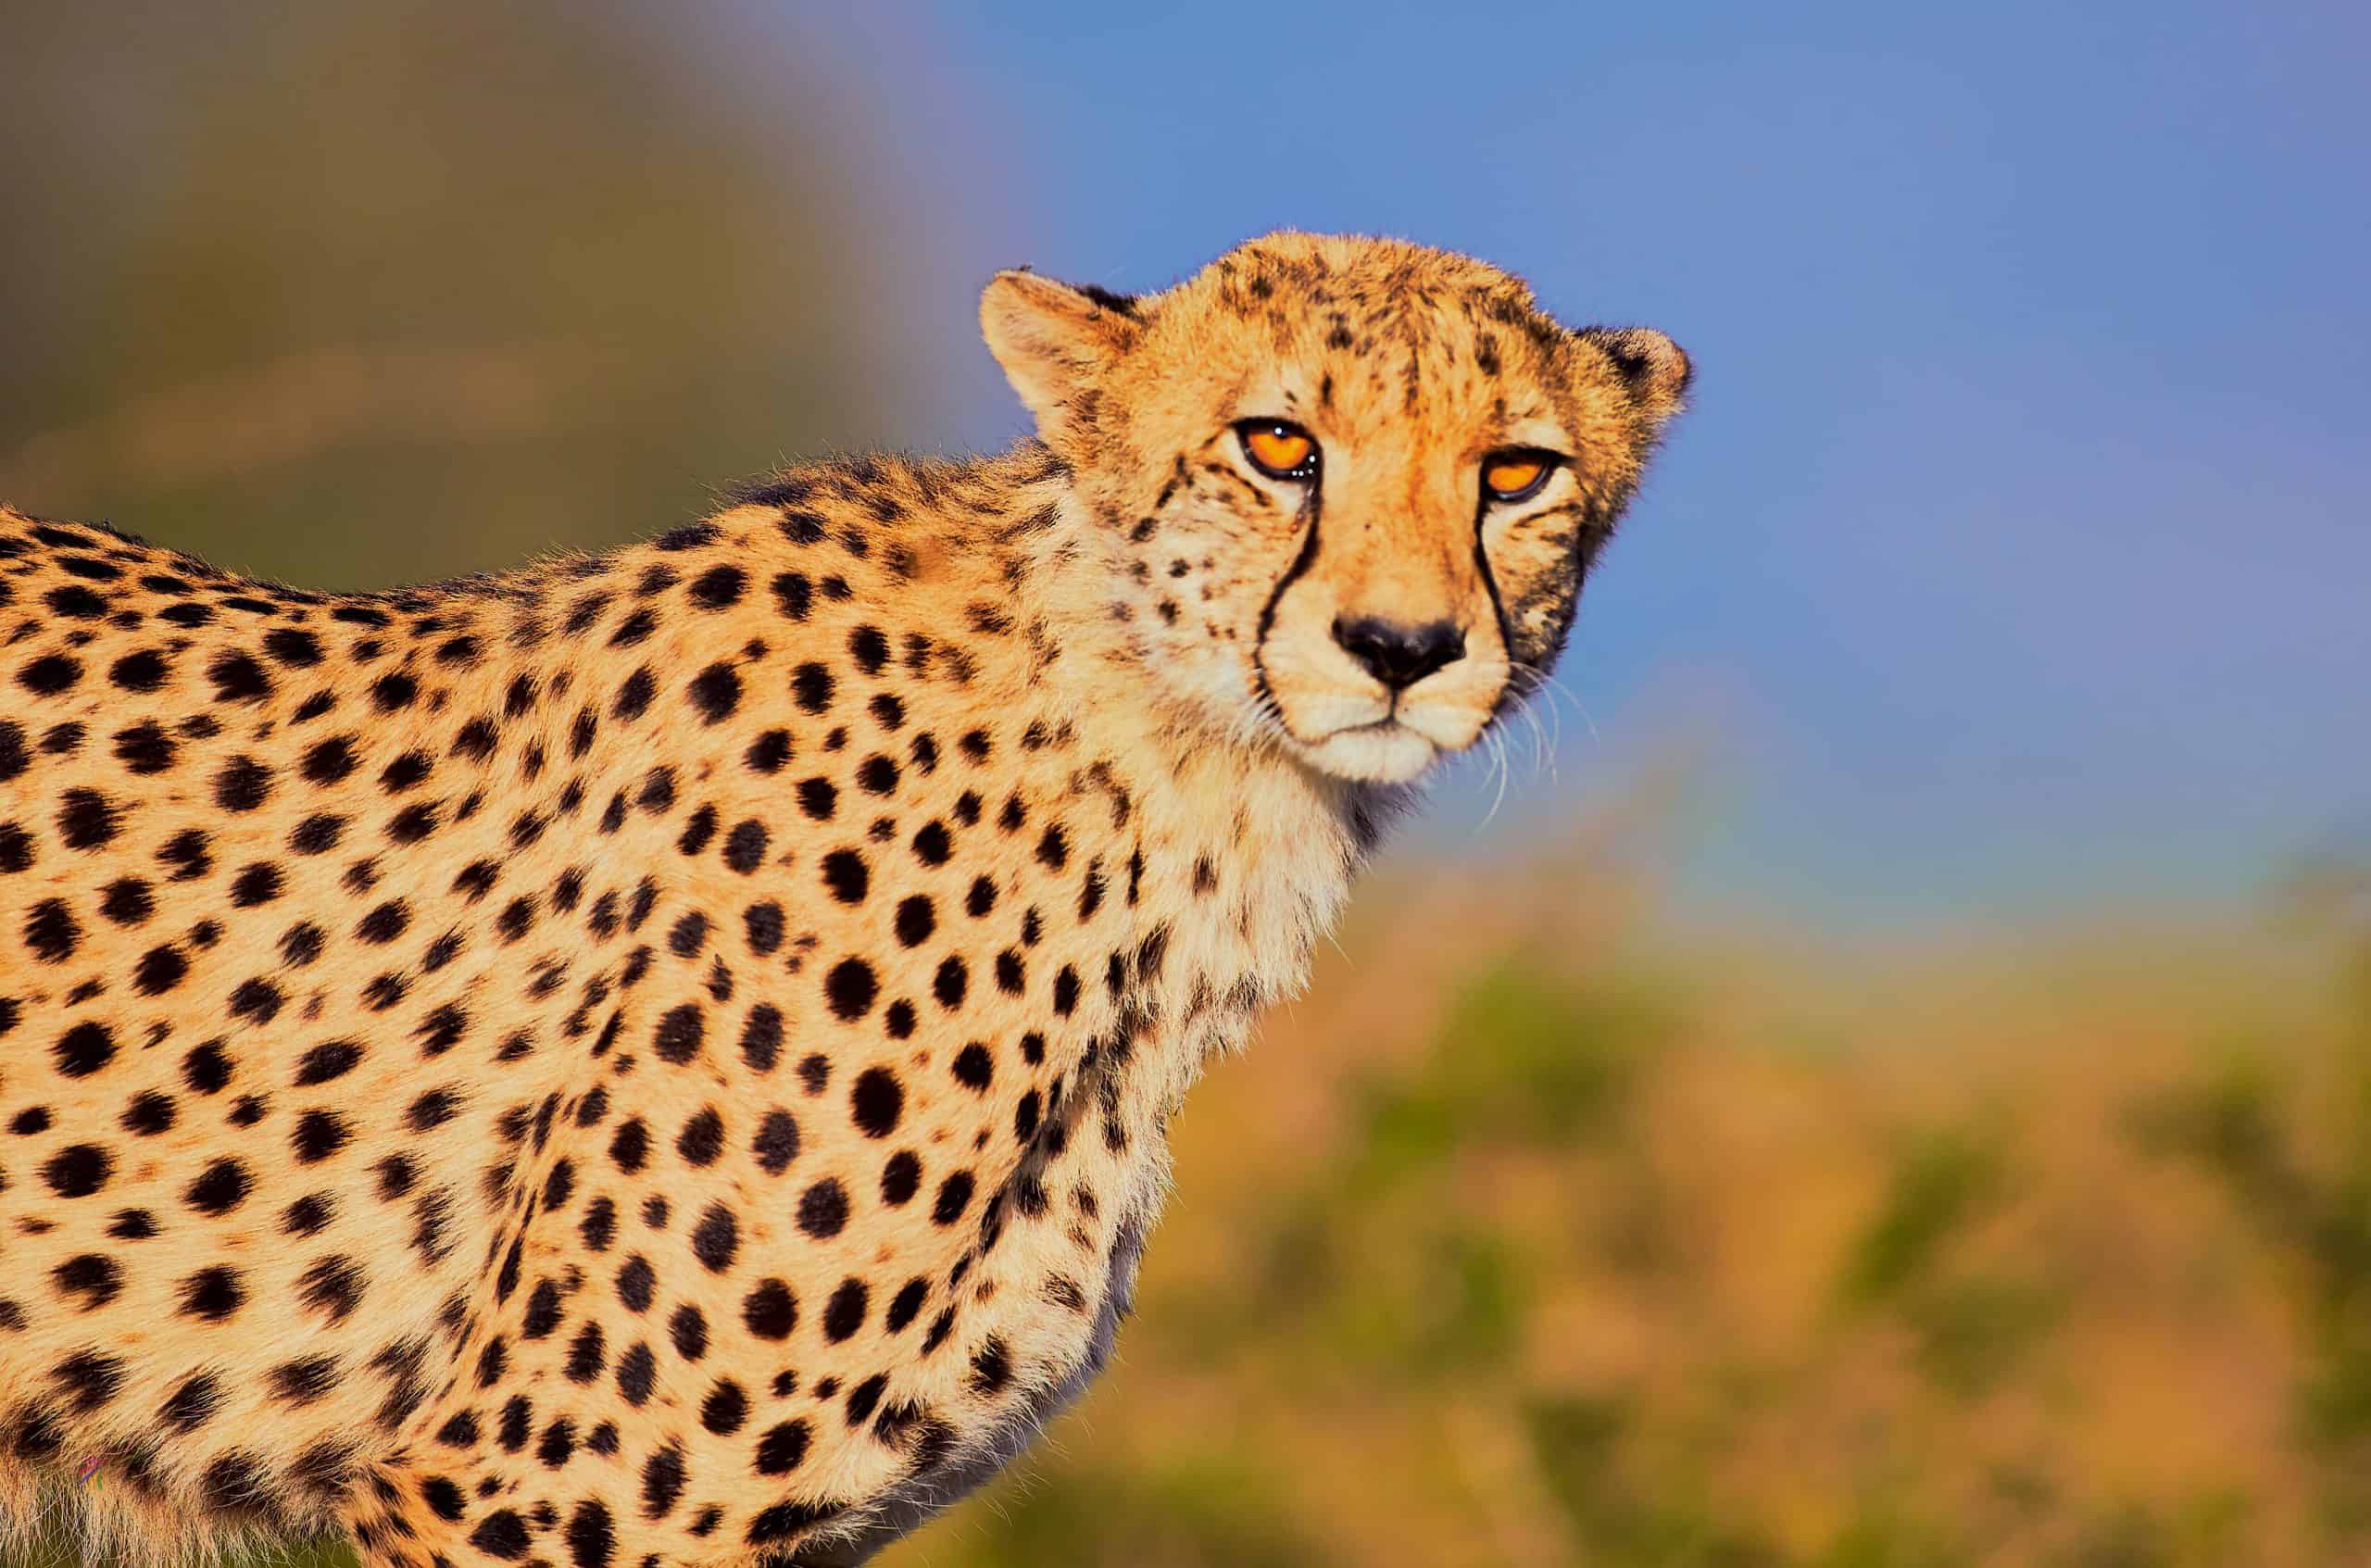 The Dignity Cheetah